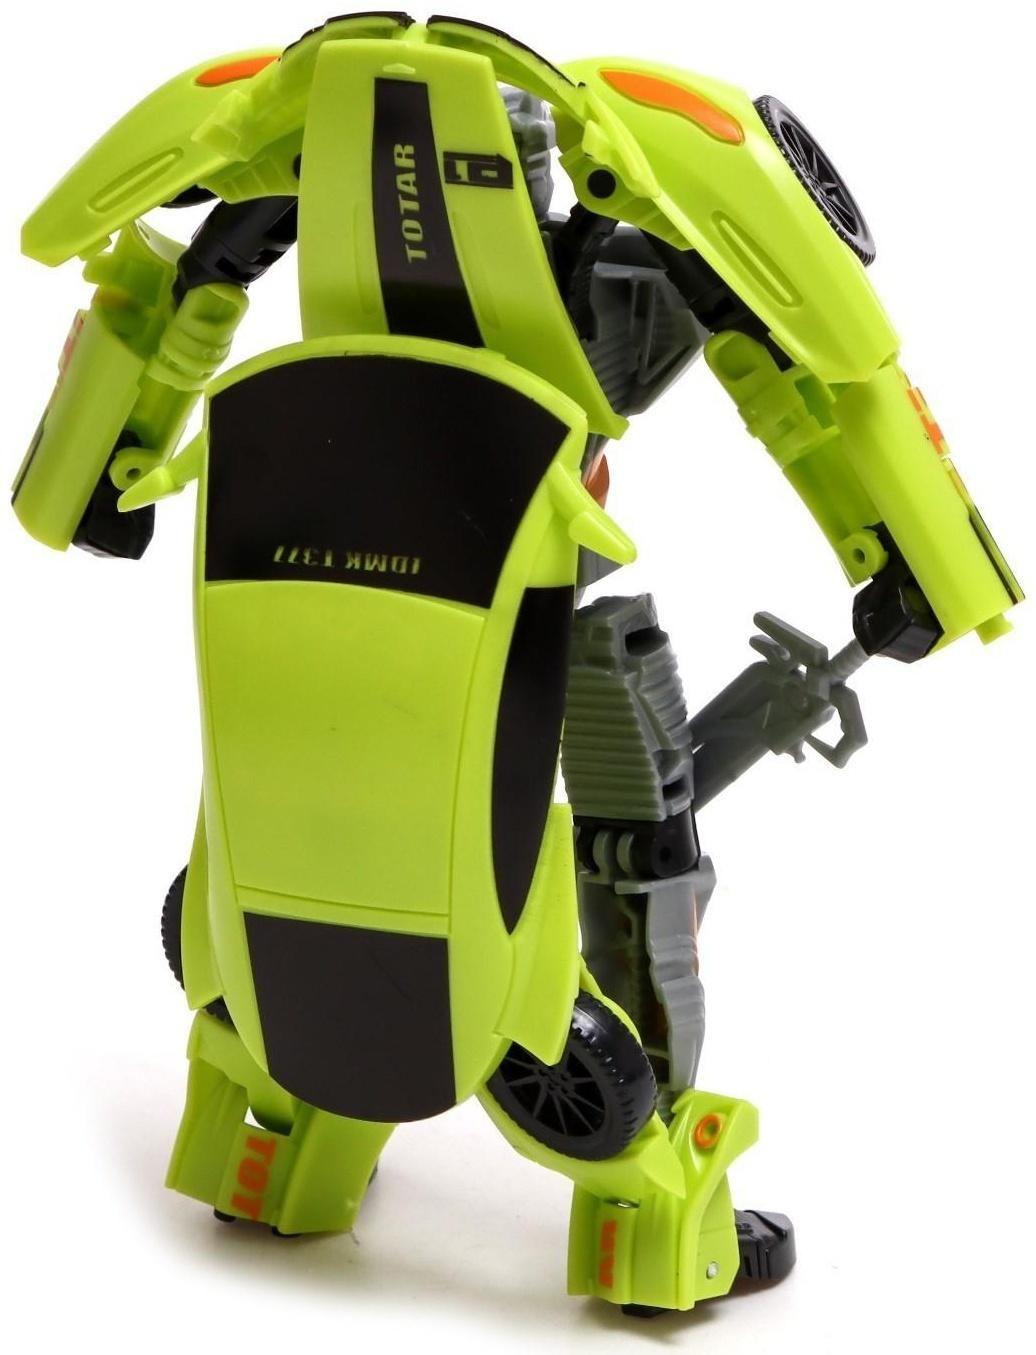 Робот «Автобот», трансформируется, цвет зелёный